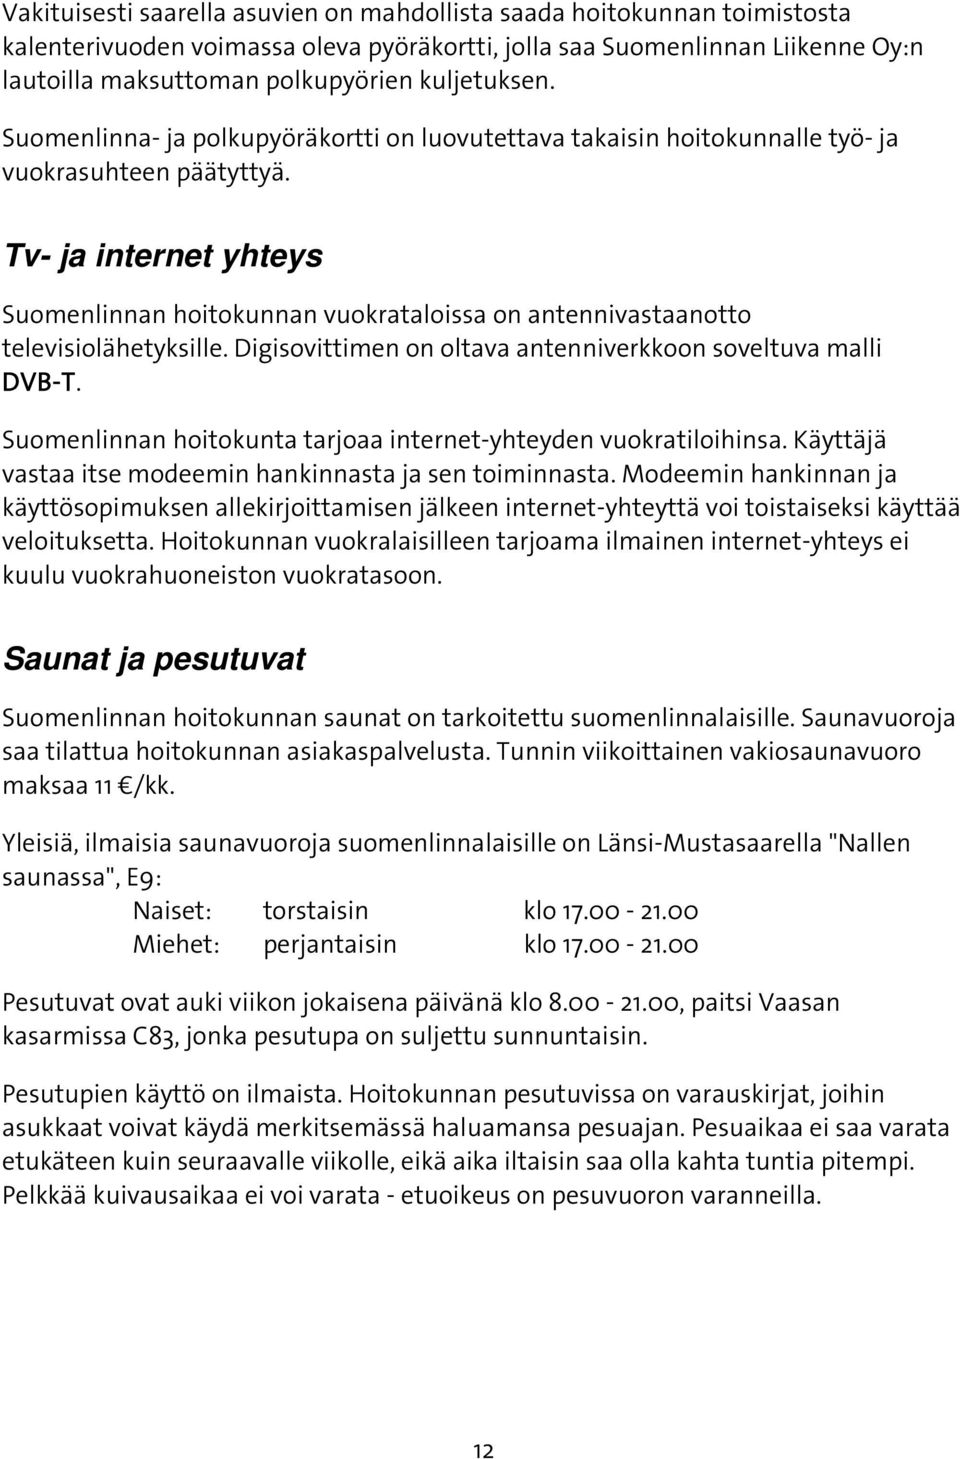 Tv- ja internet yhteys Suomenlinnan hoitokunnan vuokrataloissa on antennivastaanotto televisiolähetyksille. Digisovittimen on oltava antenniverkkoon soveltuva malli DVB-T.